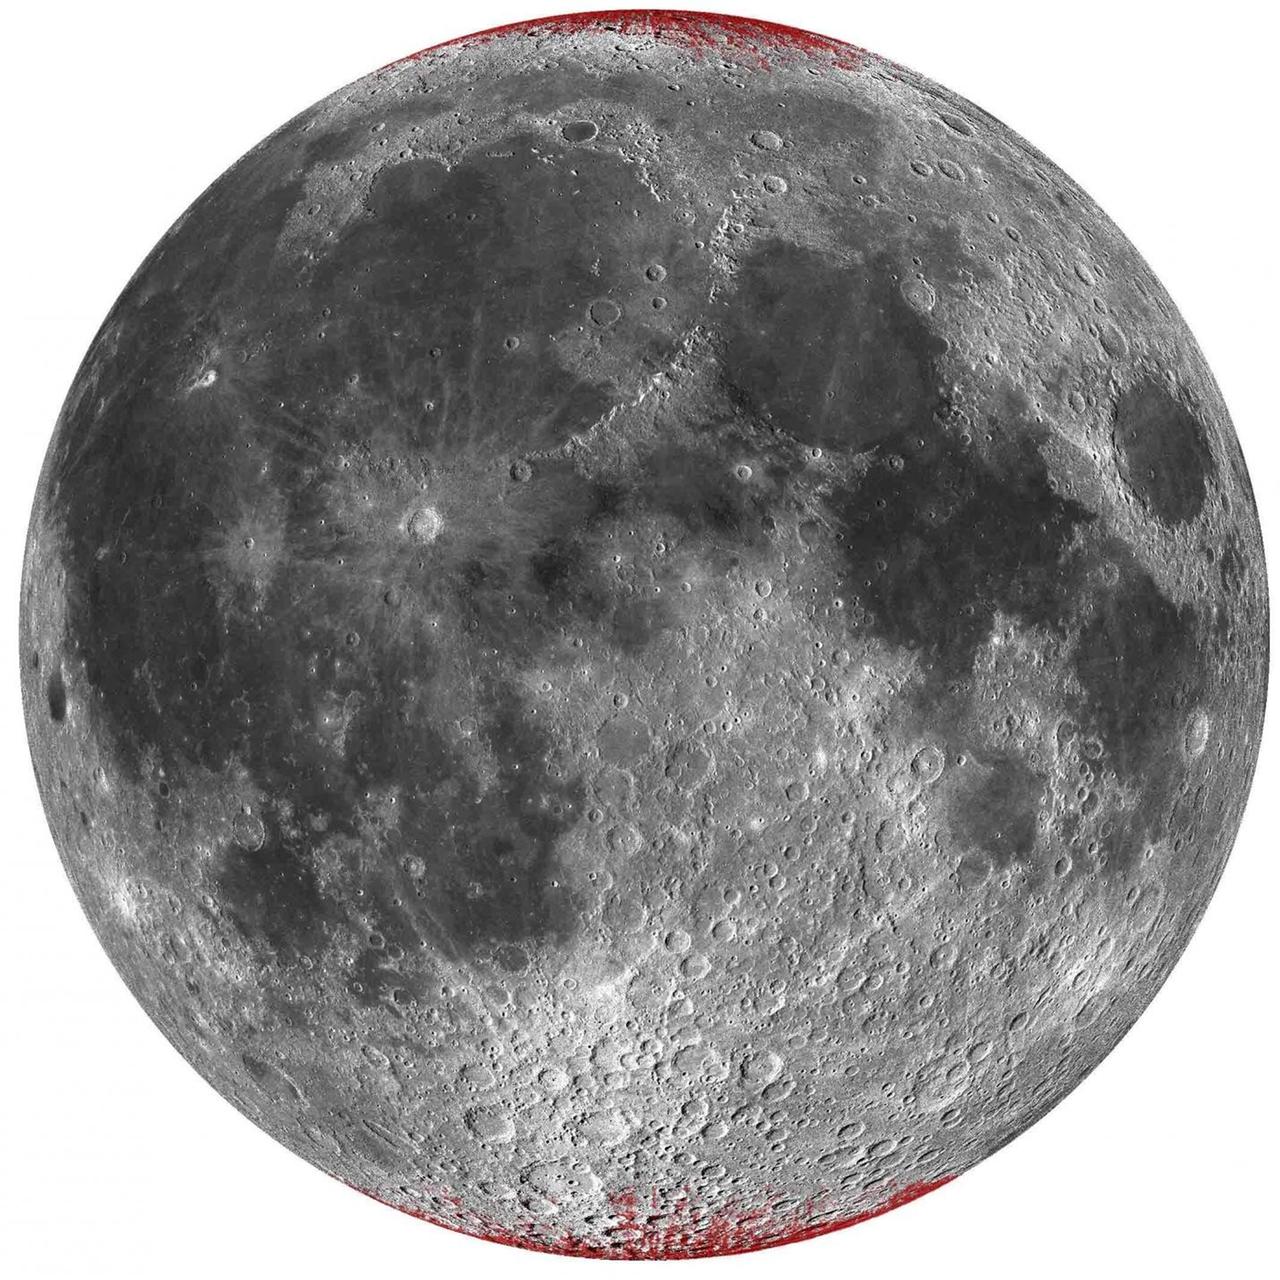 Stark übertriebene Darstellung der „rostigen“ Hematit-Bereiche auf dem Mond